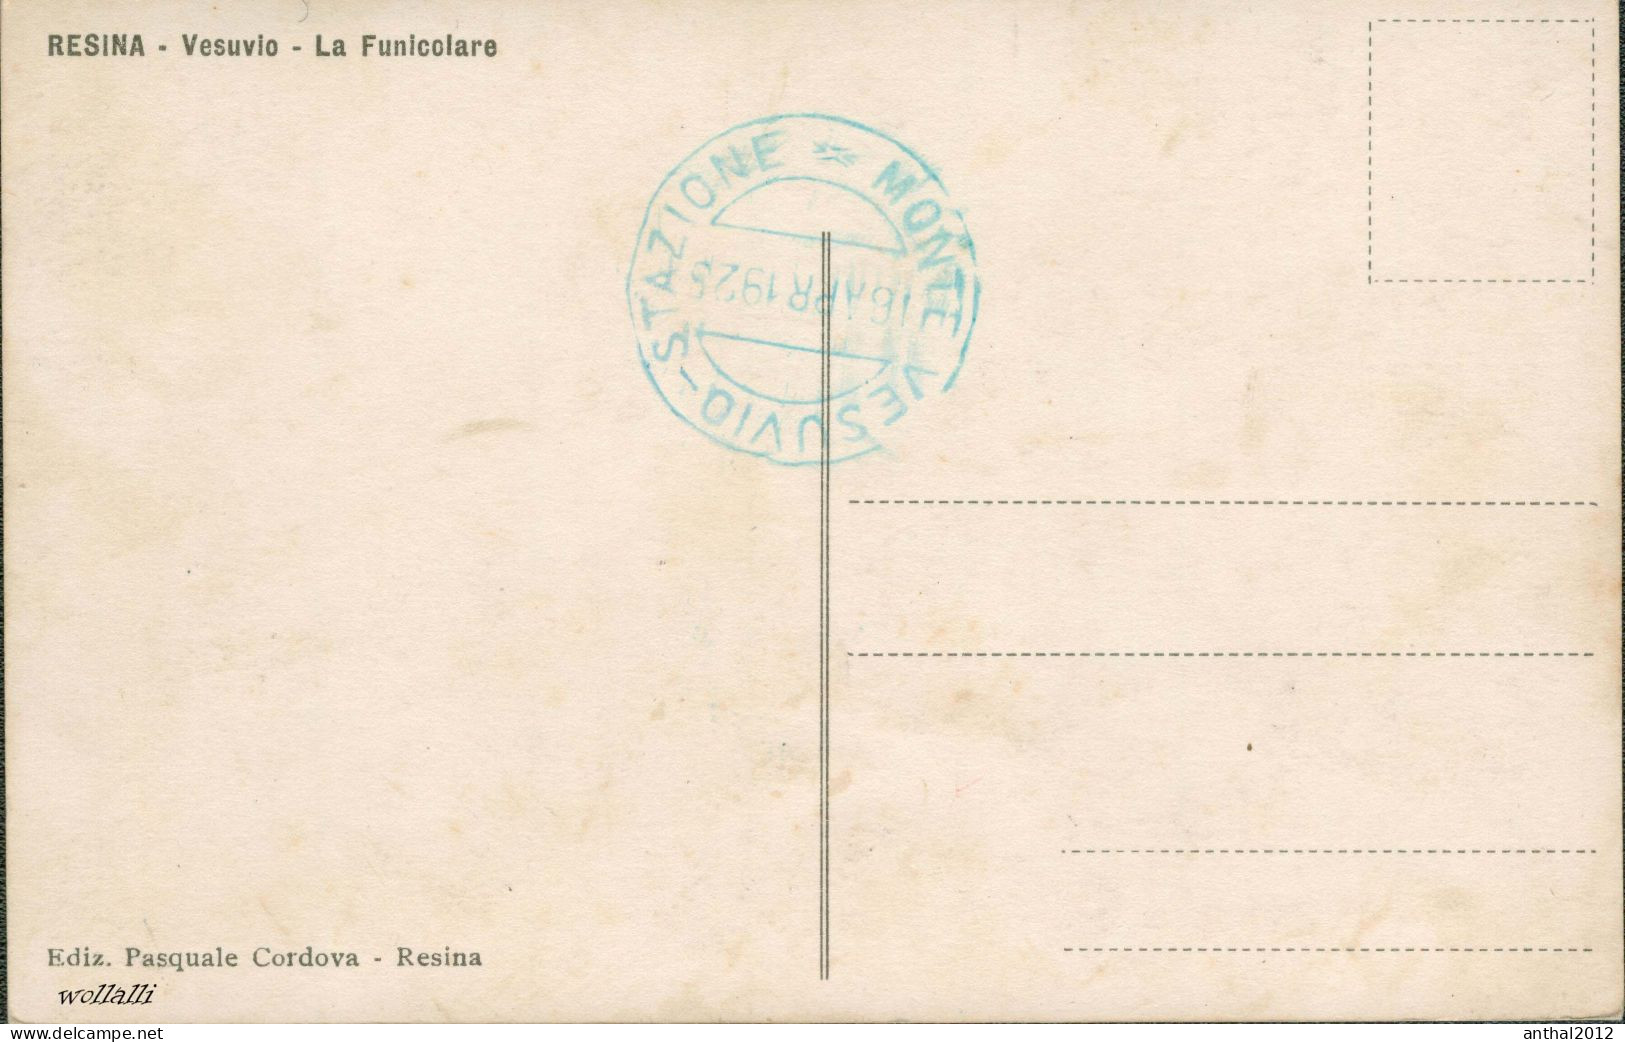 Superrar RESINA VESUVIO TRAMWAY THE FUNICOLARE POSTAL POSTCARD 16.4.1925 Cordova Verlag - Funiculaires